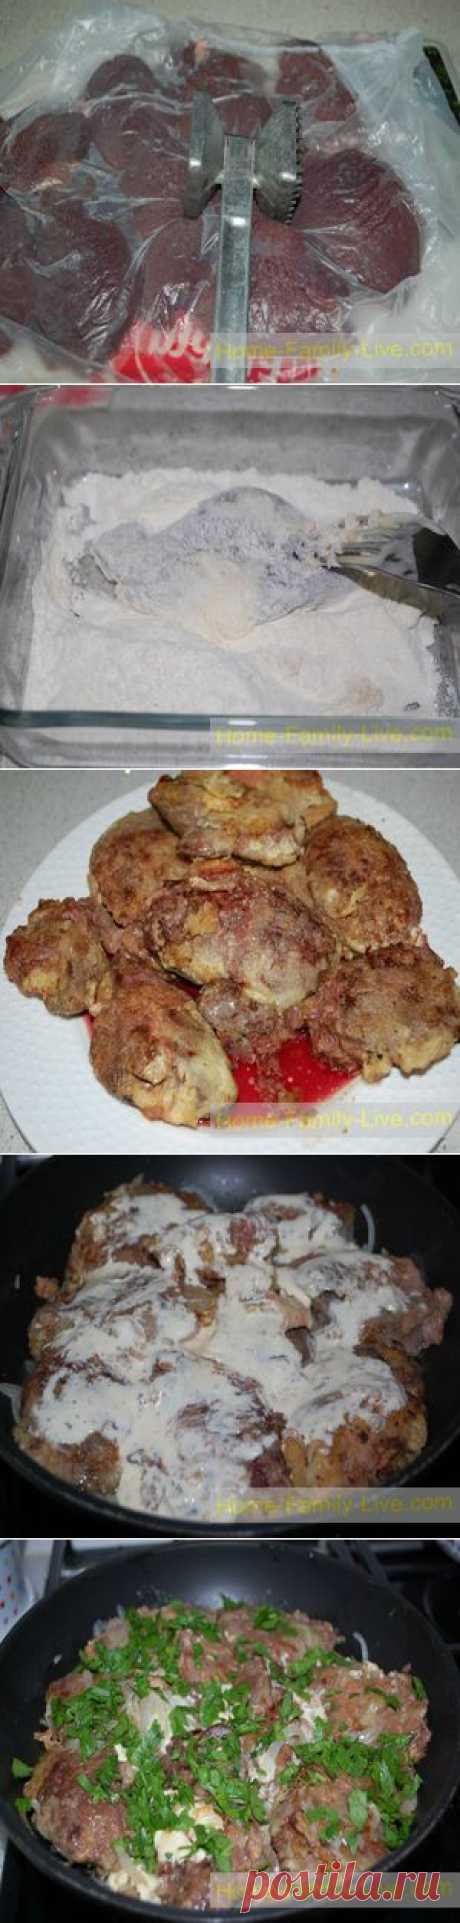 Жареная куриная печень - пошаговый фото рецептКулинарные рецепты